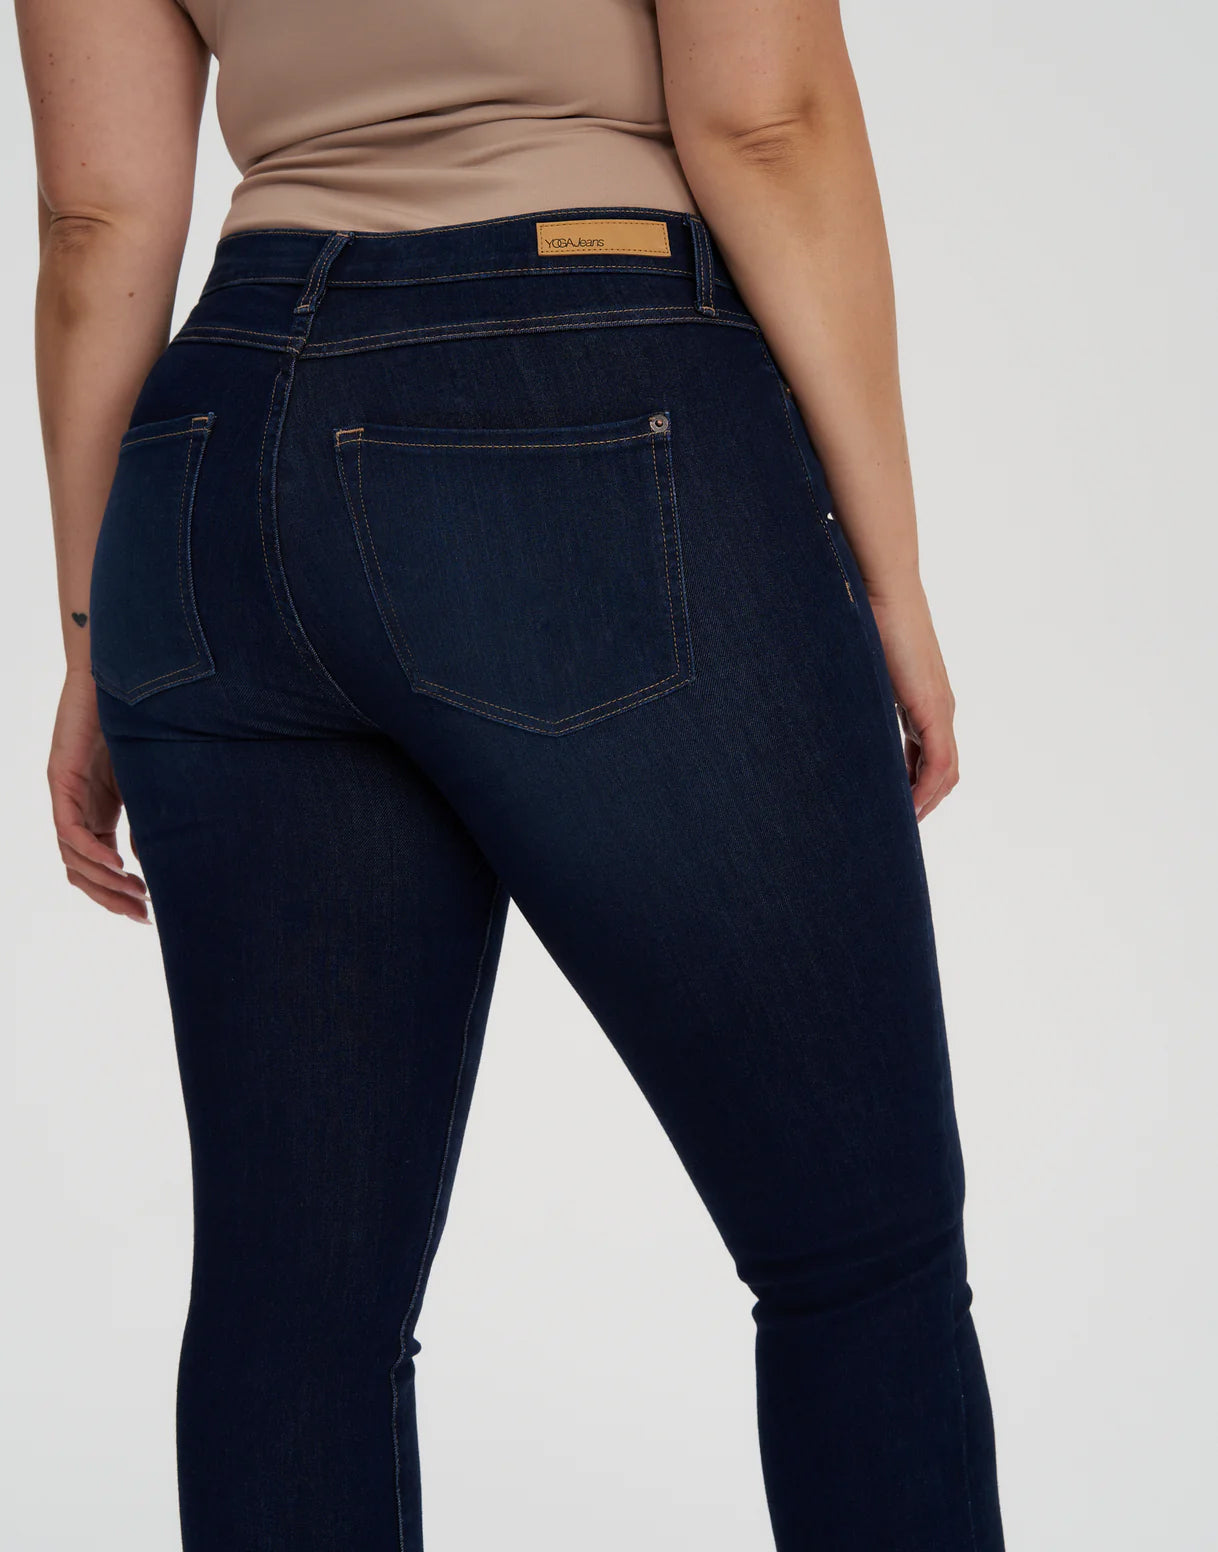 Jeans coupe skinny Rachel 30’’ - bleu DK Indie Yoga Jeans 3 de 7